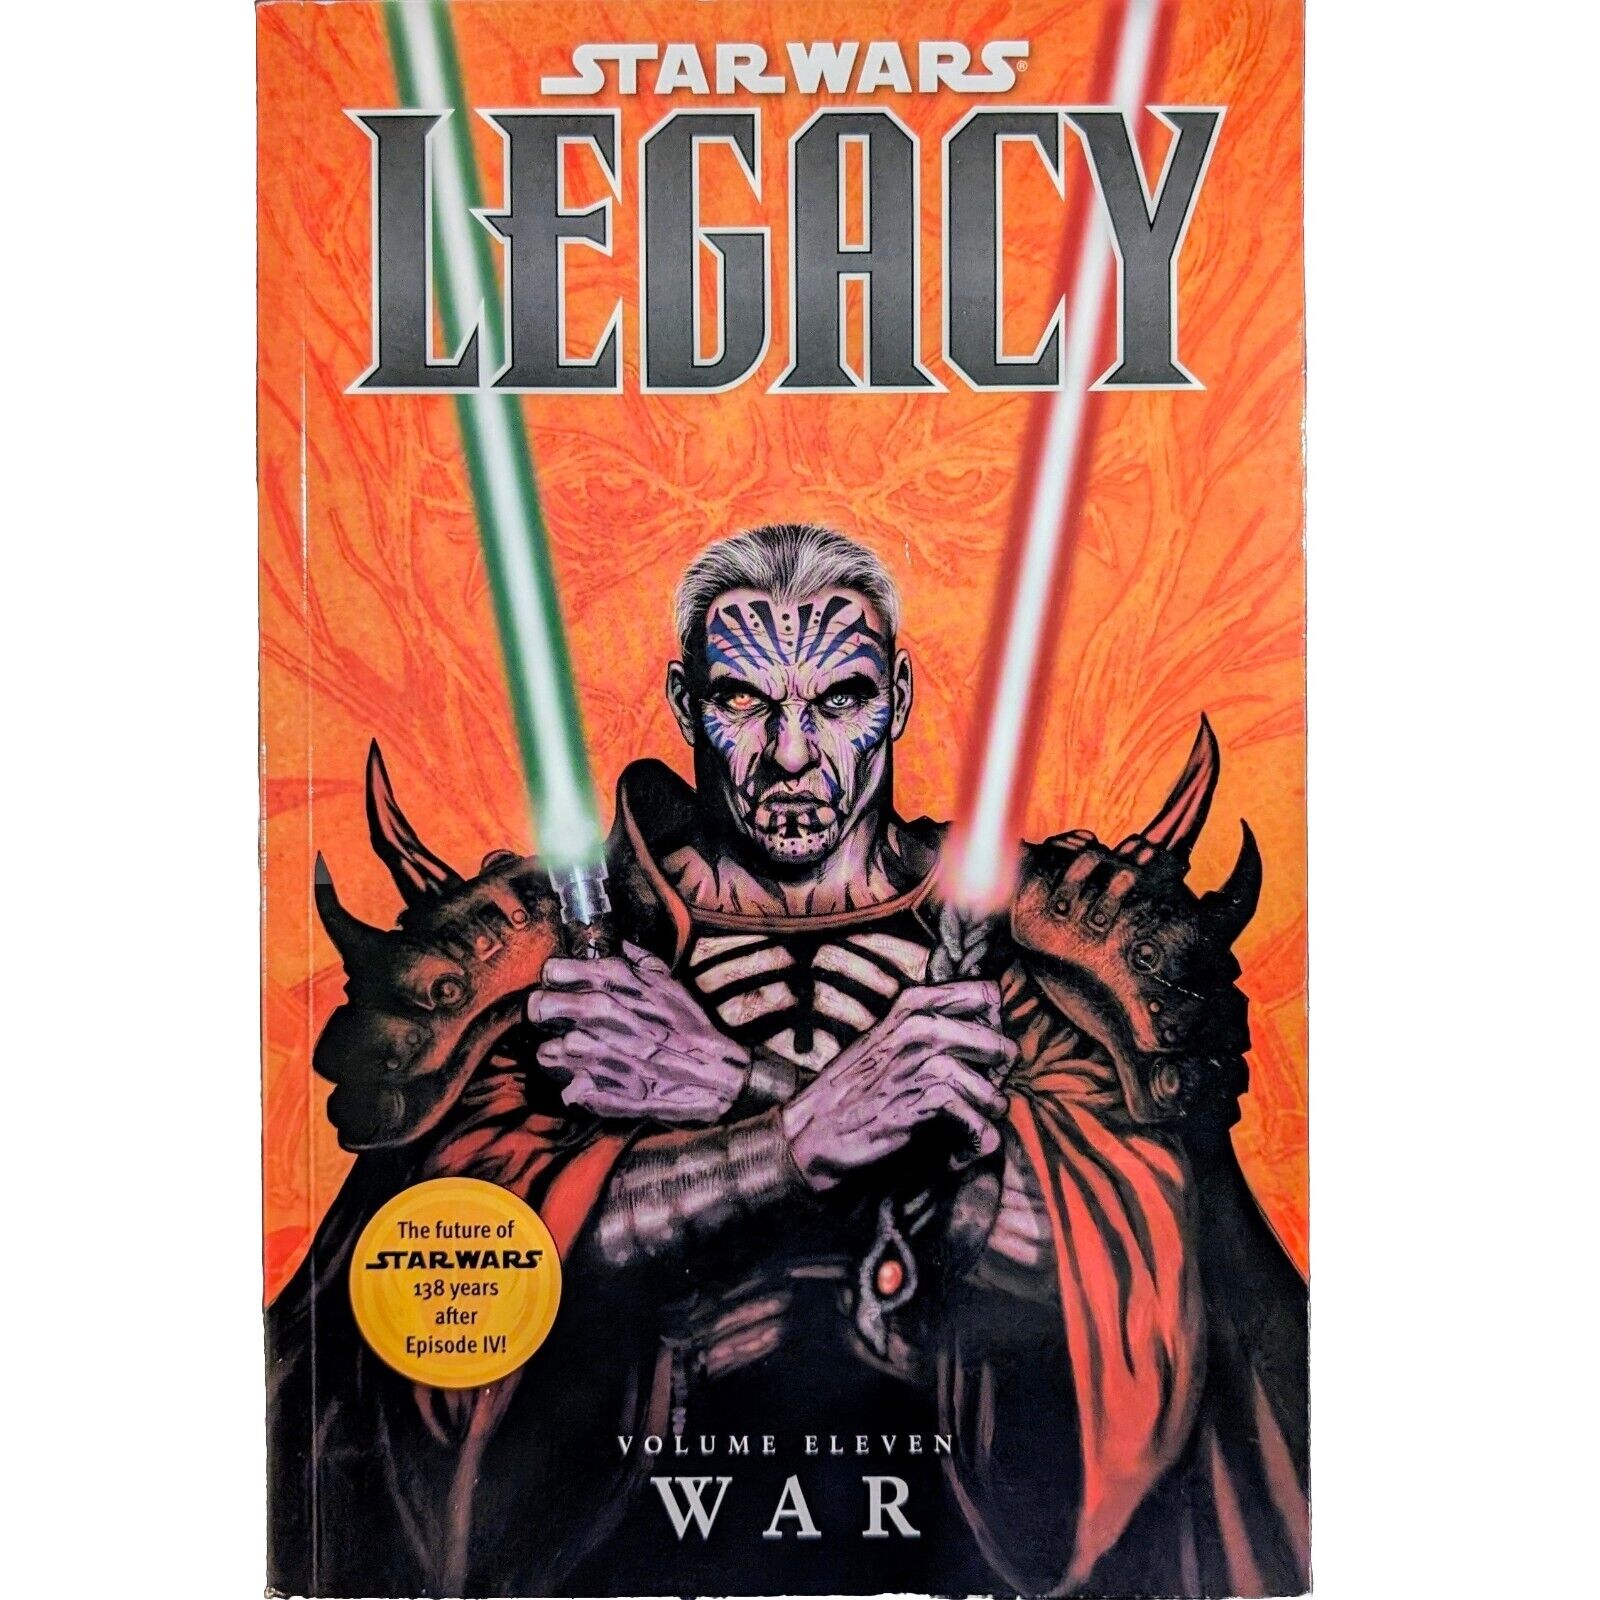 STAR WARS LEGACY Volume 11 - War NM